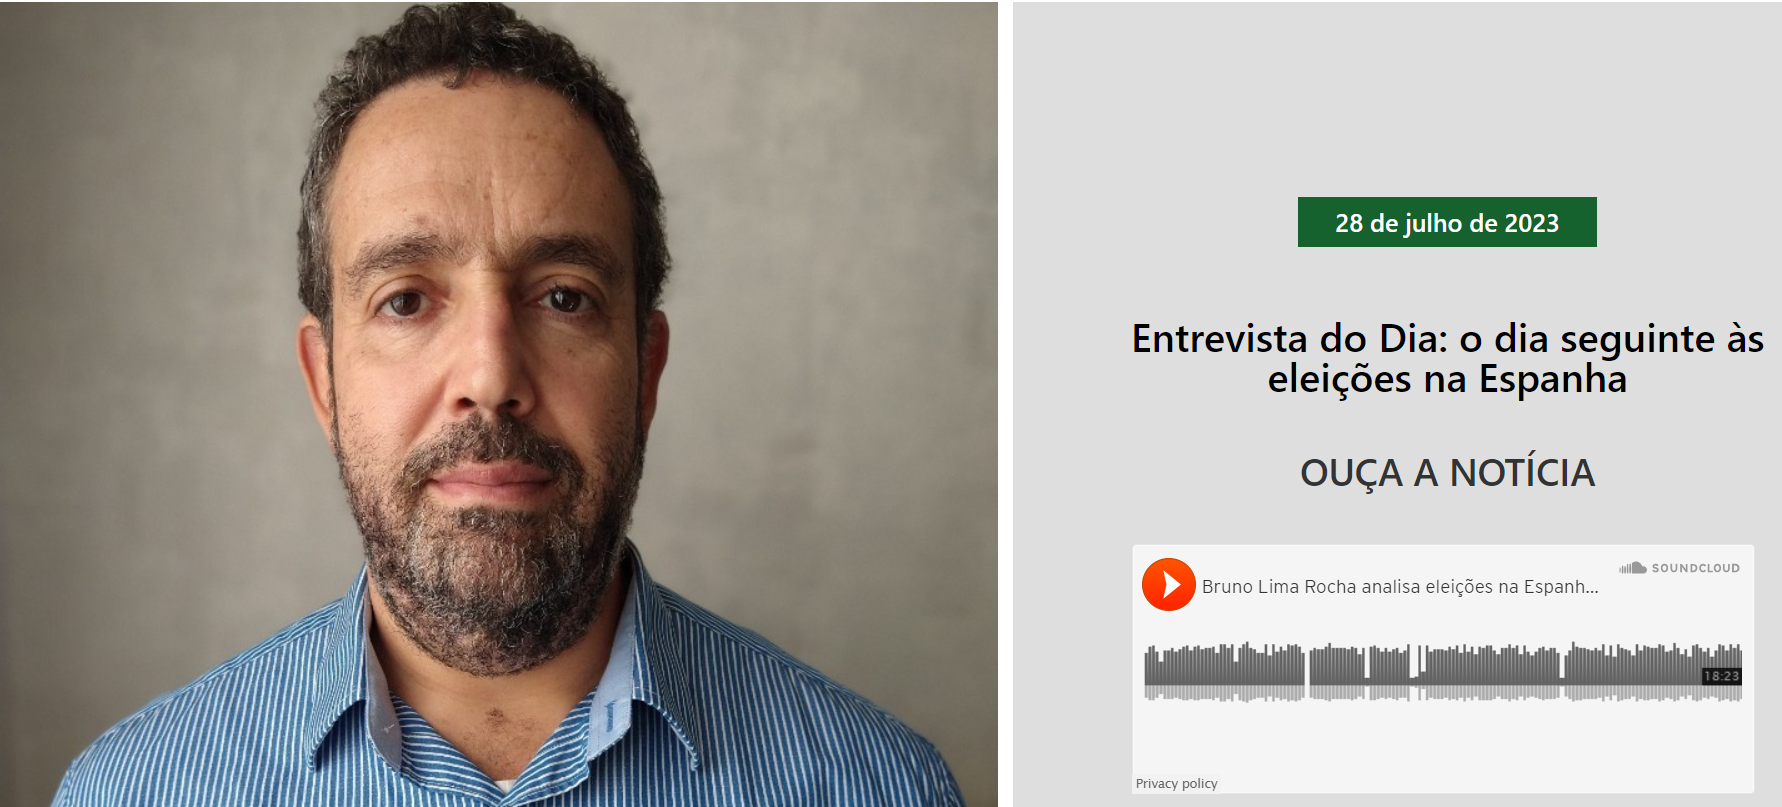 Entrevista para a Rádio Brasil Campinas a respeito das eleições de Espanha